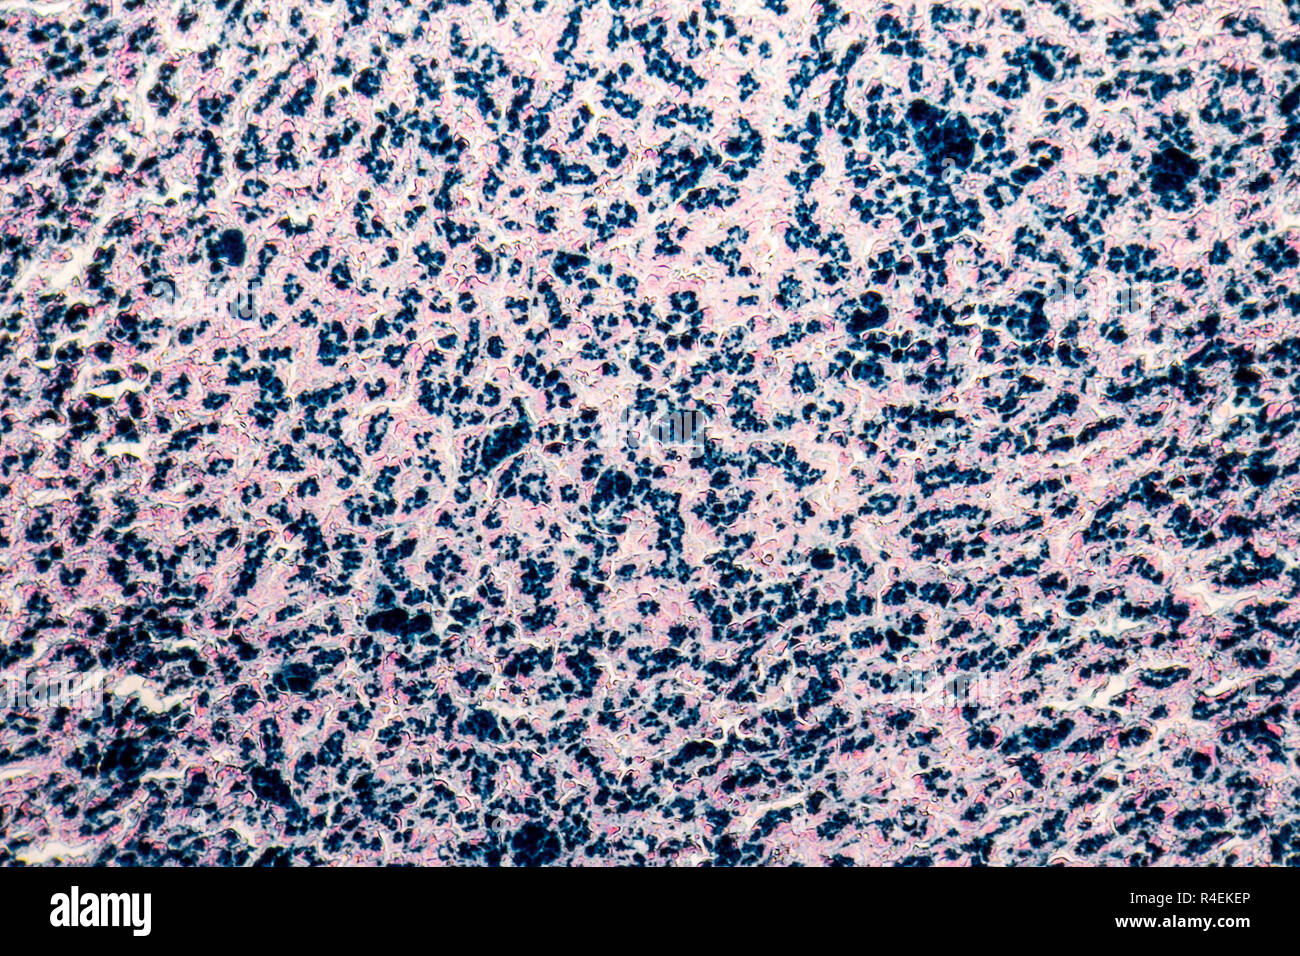 human liver micrography Stock Photo